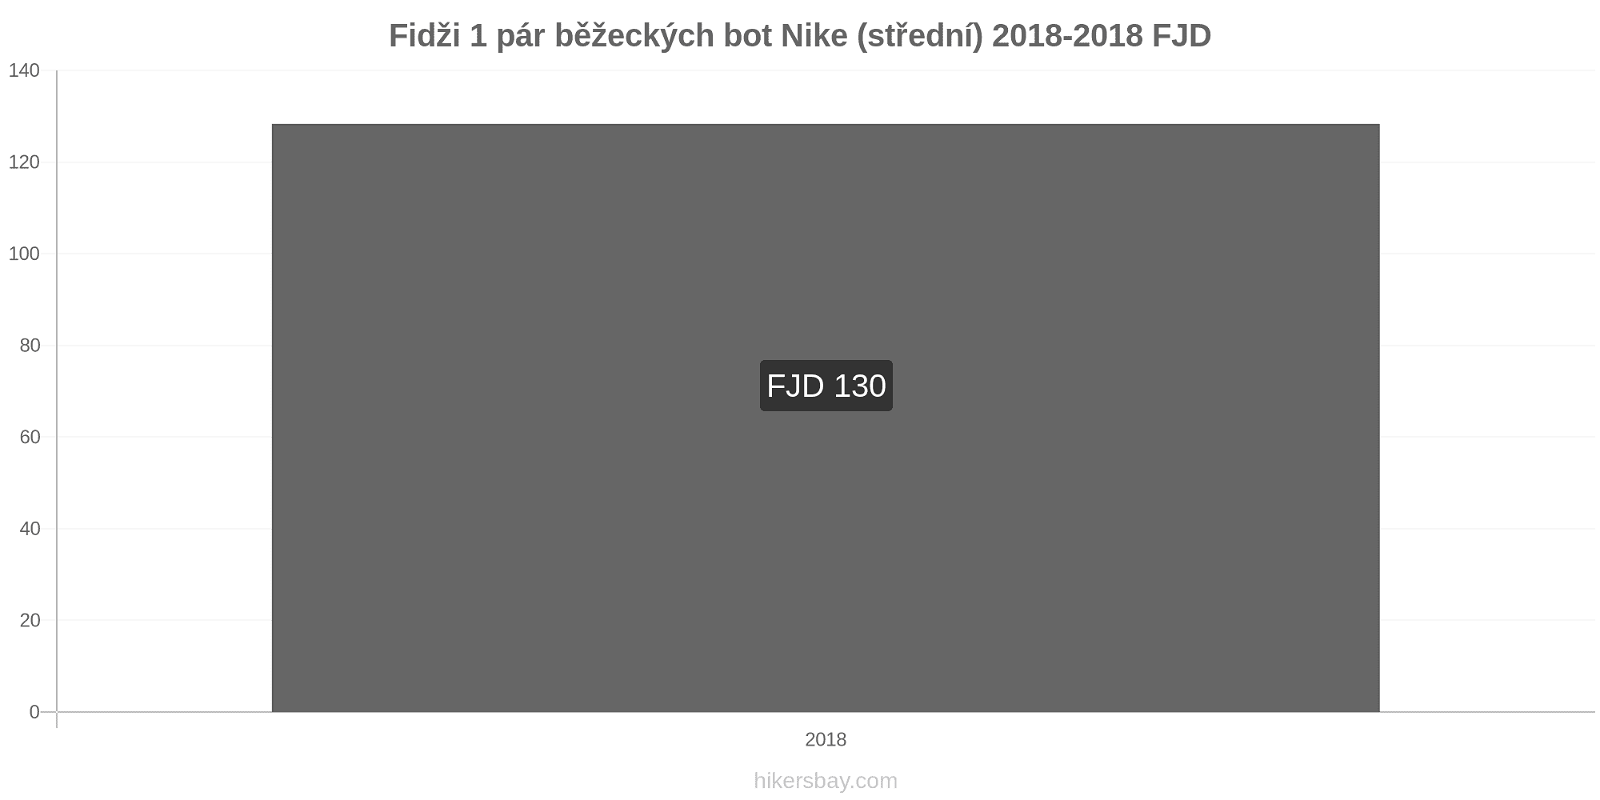 Fidži změny cen 1 pár běžeckých bot Nike (střední) hikersbay.com